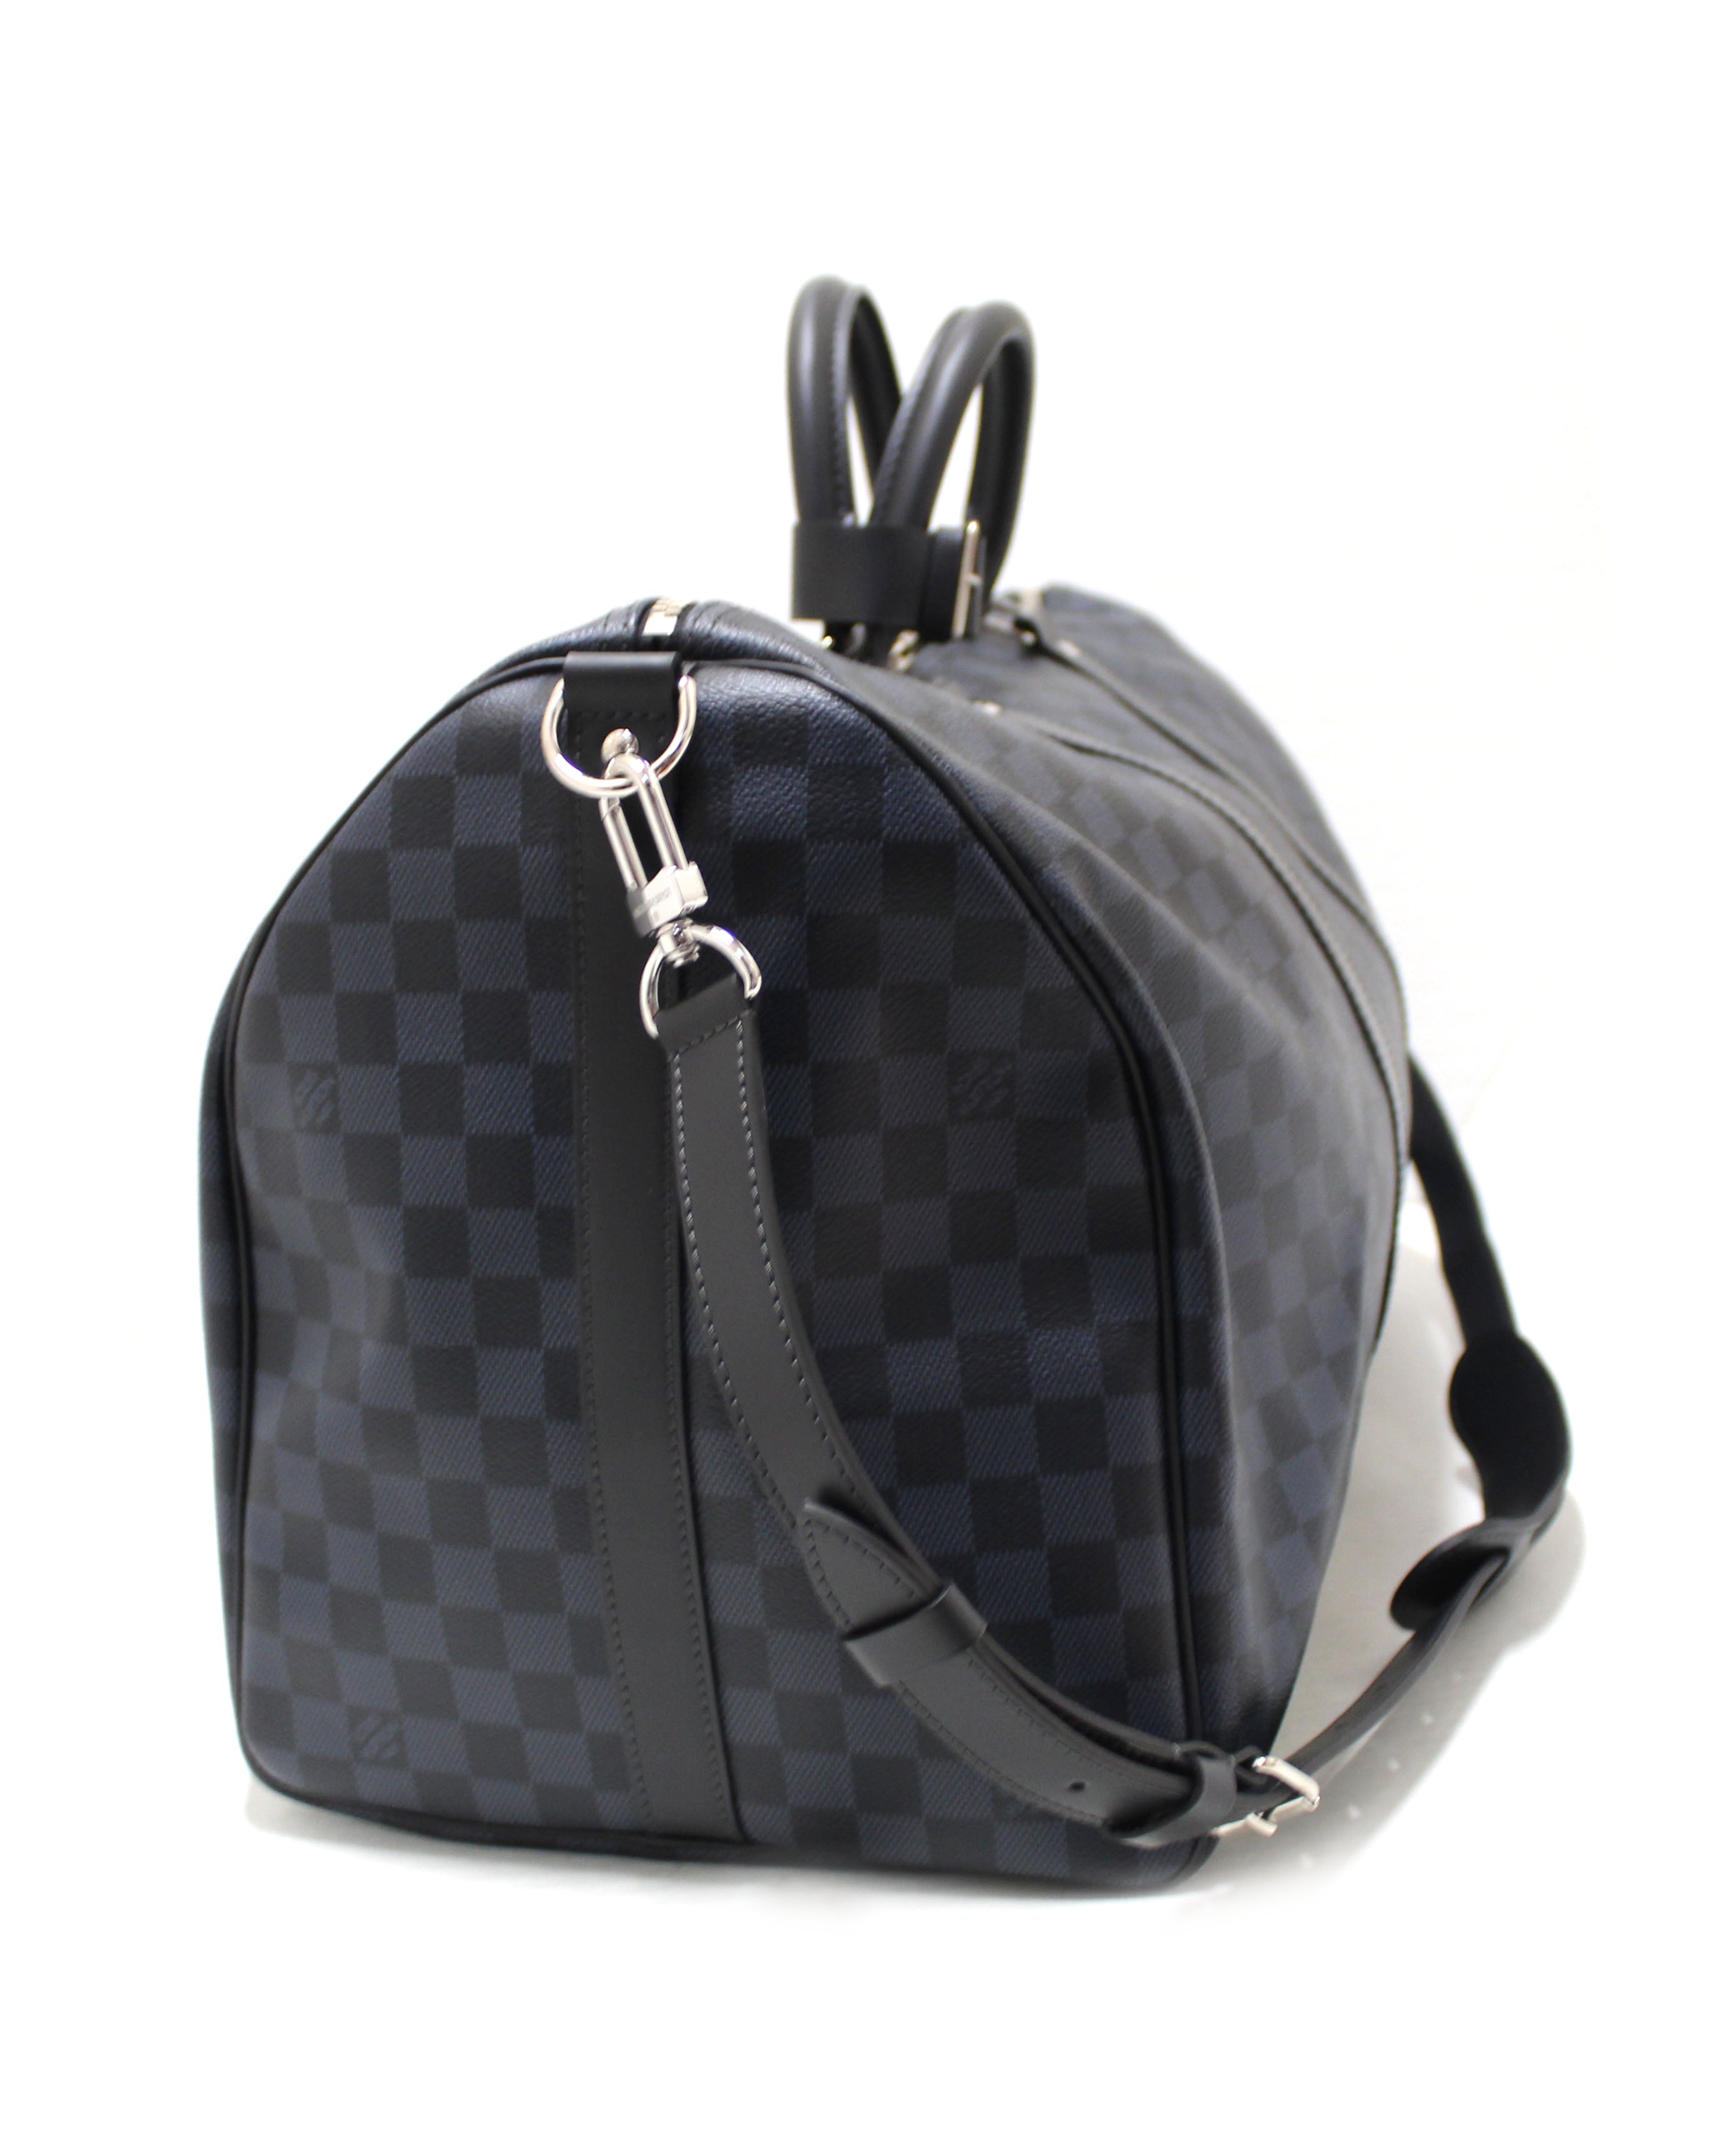 Authentic Louis Vuitton Damier Graphite Blue Coba Keepall Bandoulière 55 Travel Bag